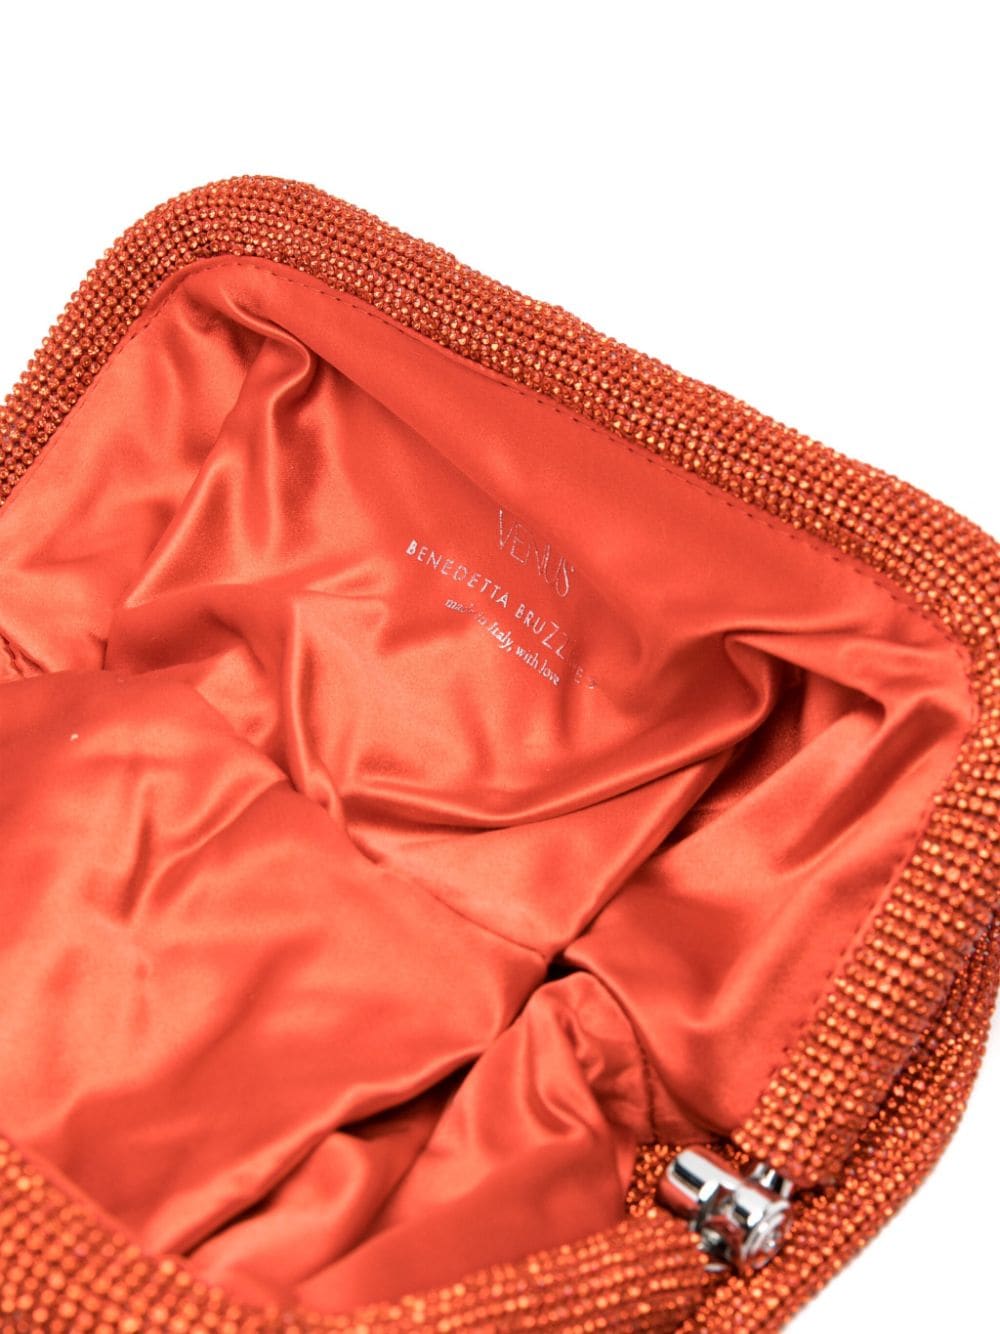 Benedetta Bruzziches BENEDETTA BRUZZICHES- Venus La Grande Crystal-embellished Clutch Bag